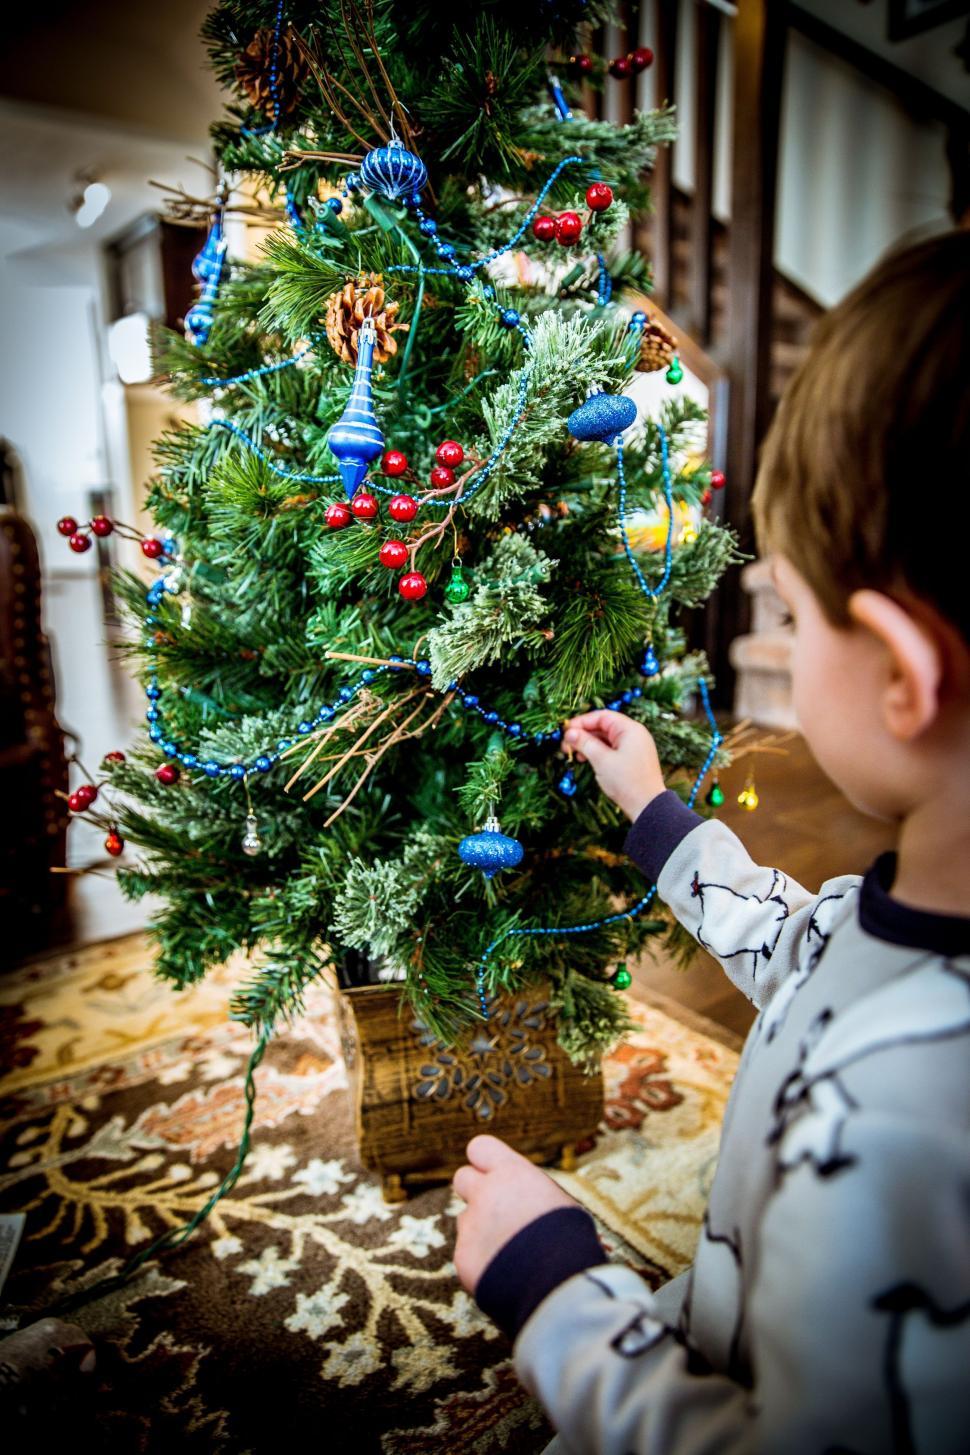 Free Image of Boy and Christmas Tree 